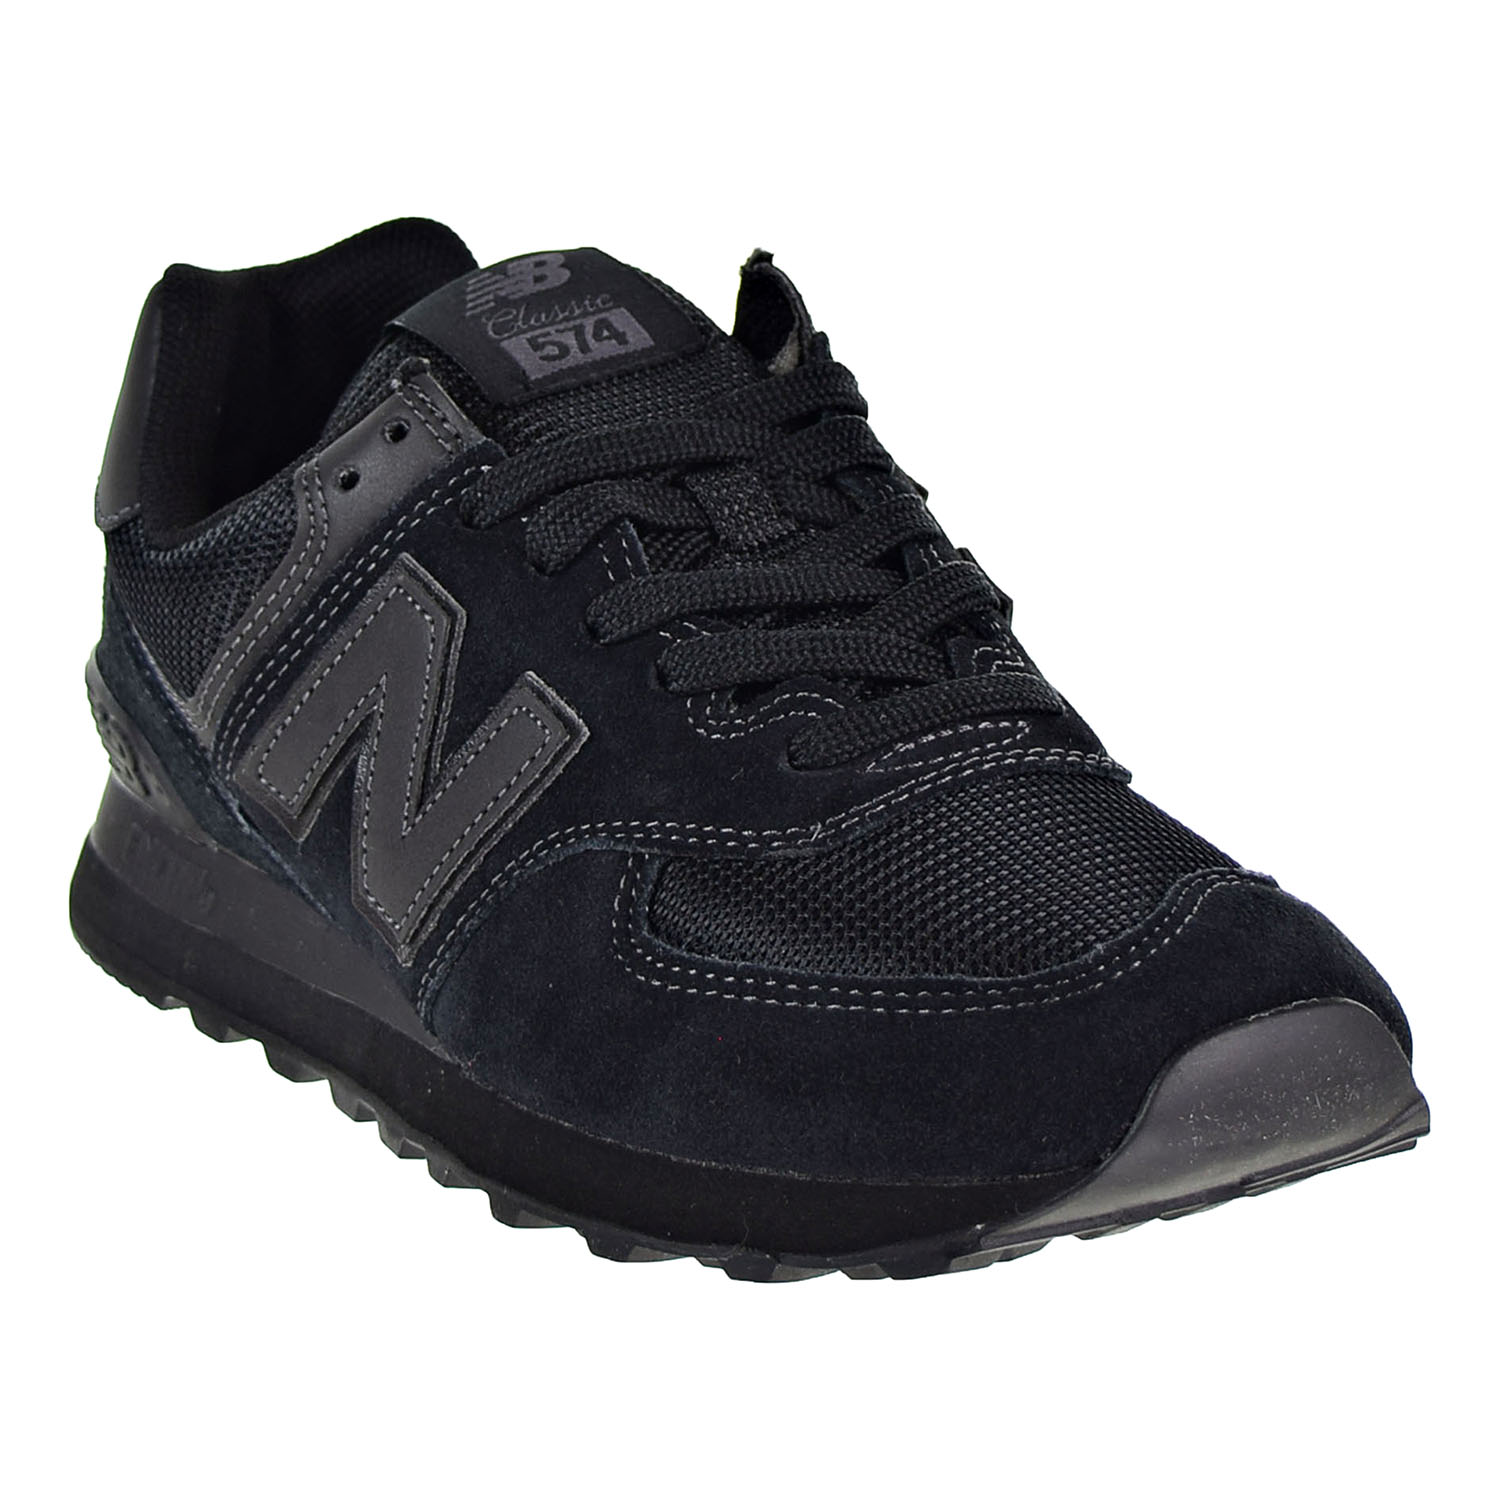 New balance 574 clásicos para Hombre Zapatos Negro ML574-ETE | eBay